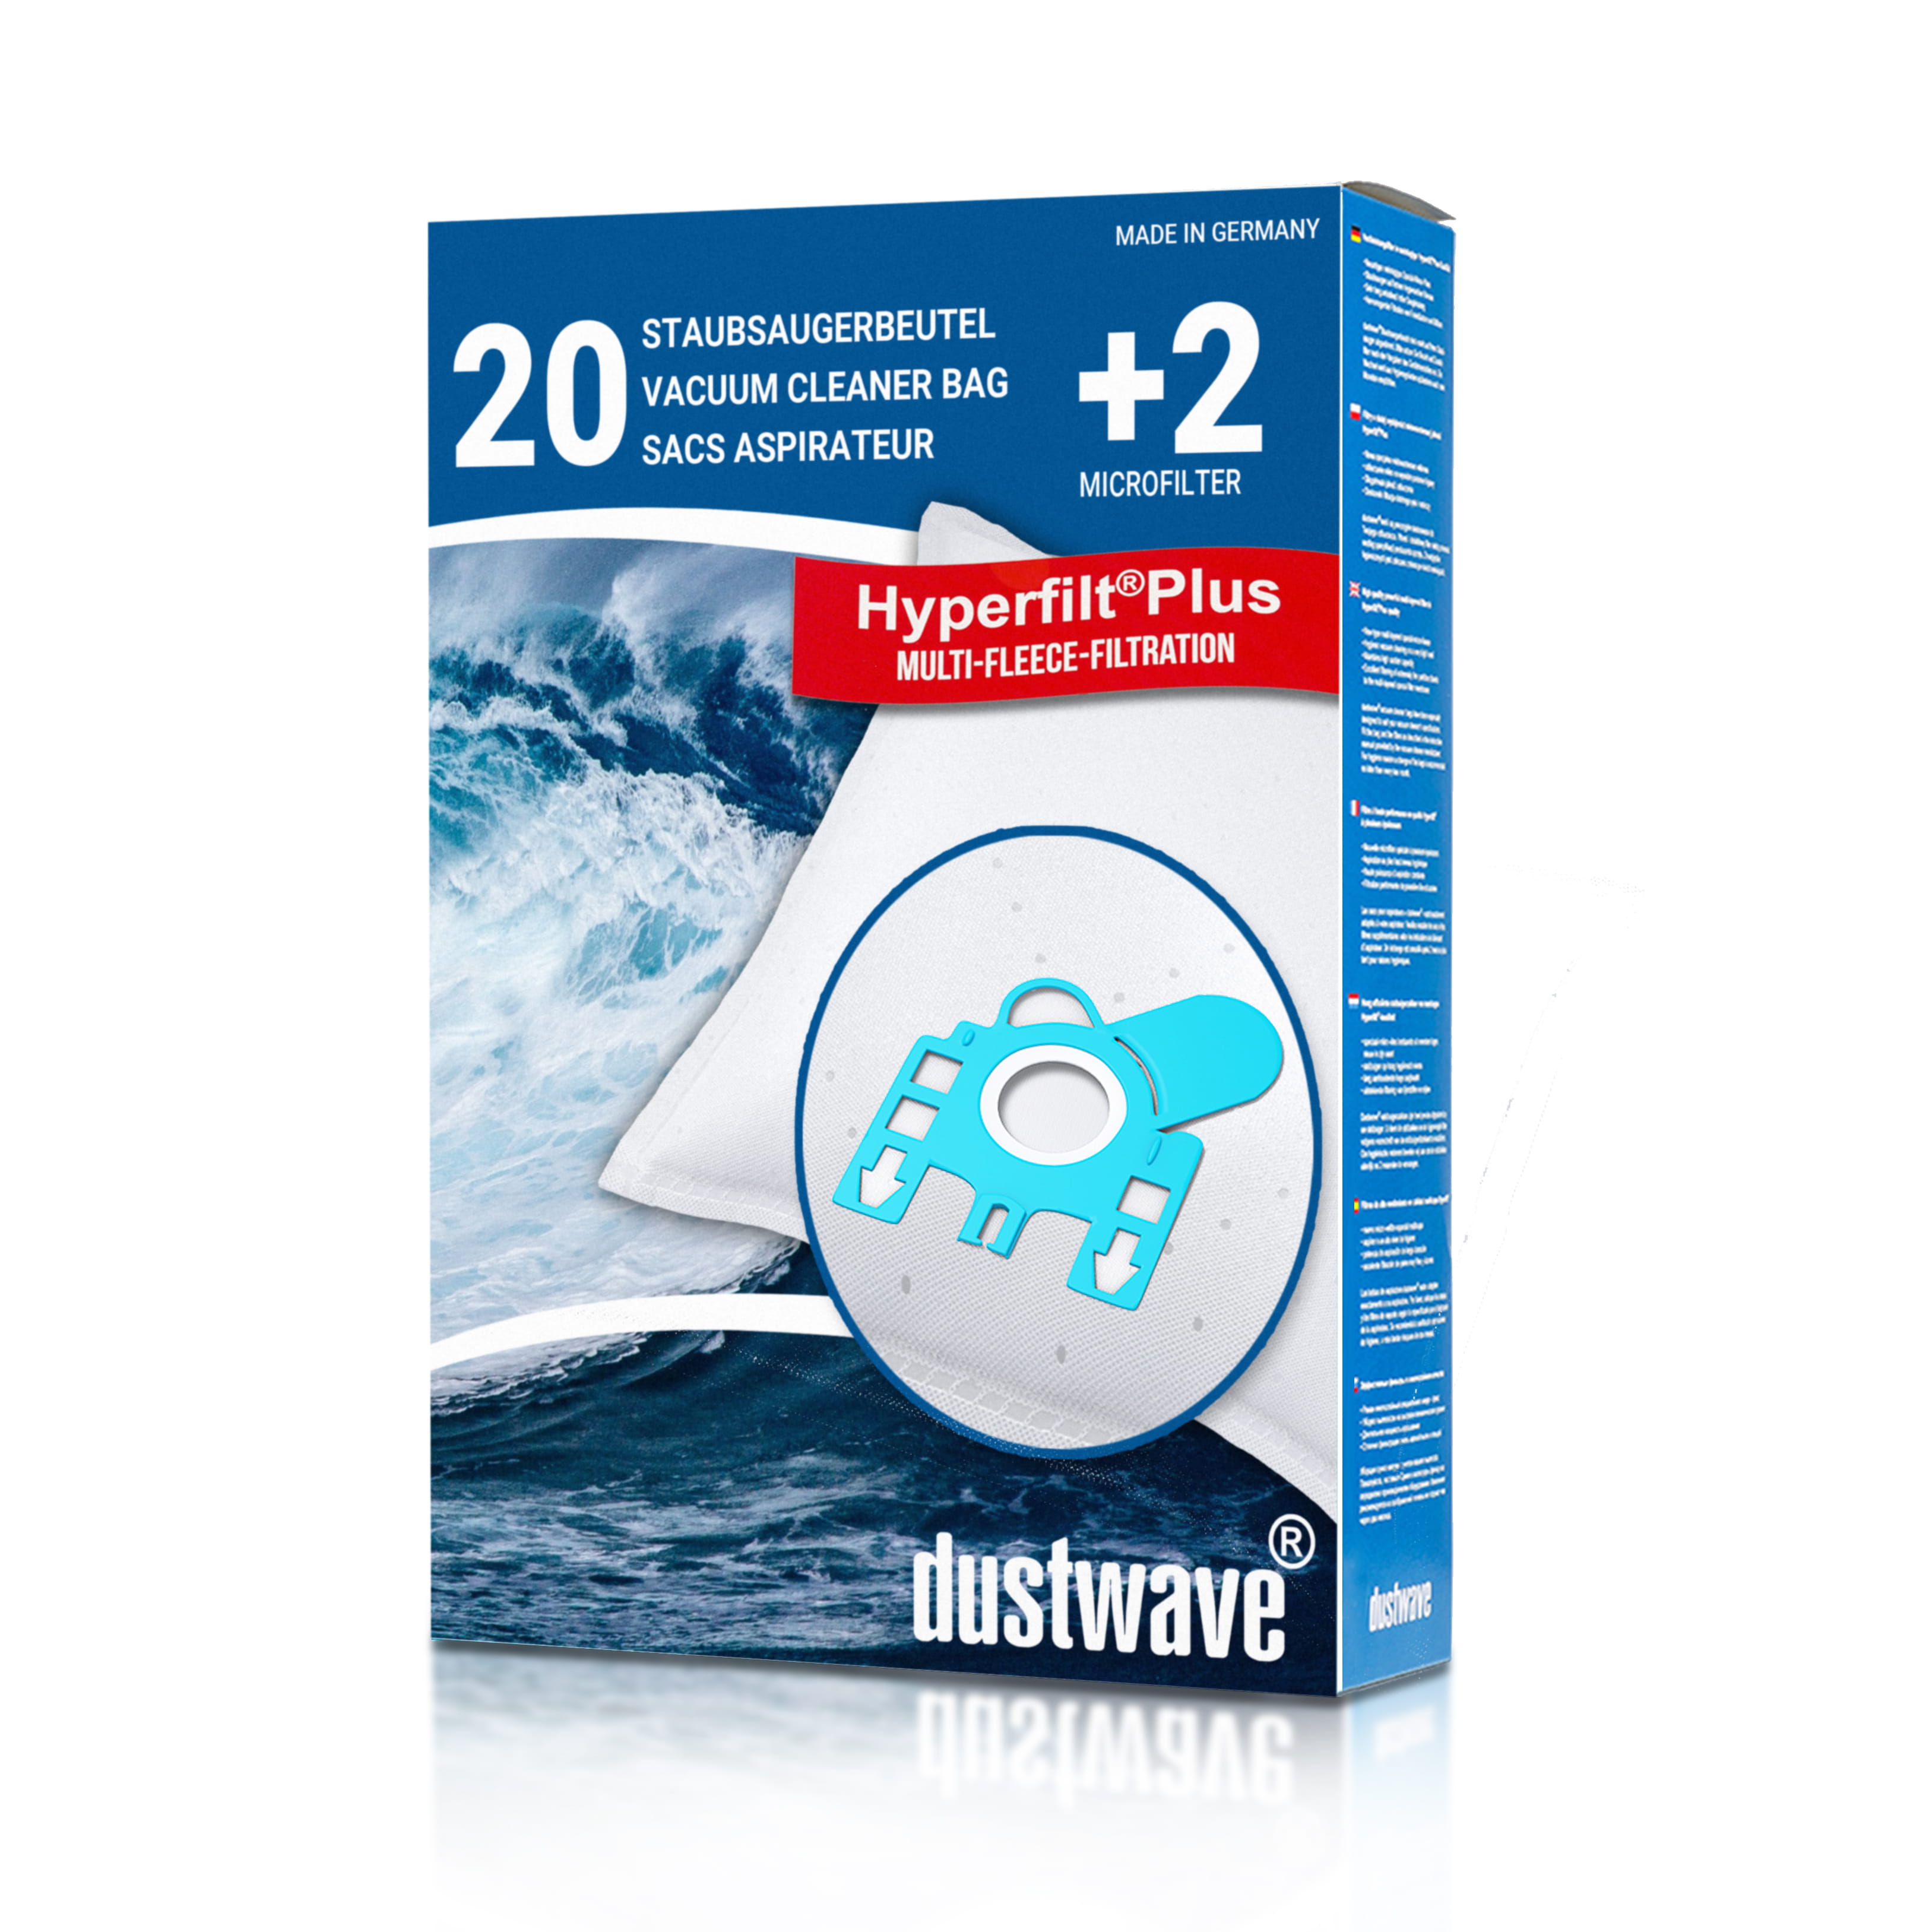 Dustwave® 20 Staubsaugerbeutel für Hoover SC116... / TRSC116 - hocheffizient, mehrlagiges Mikrovlies mit Hygieneverschluss - Made in Germany